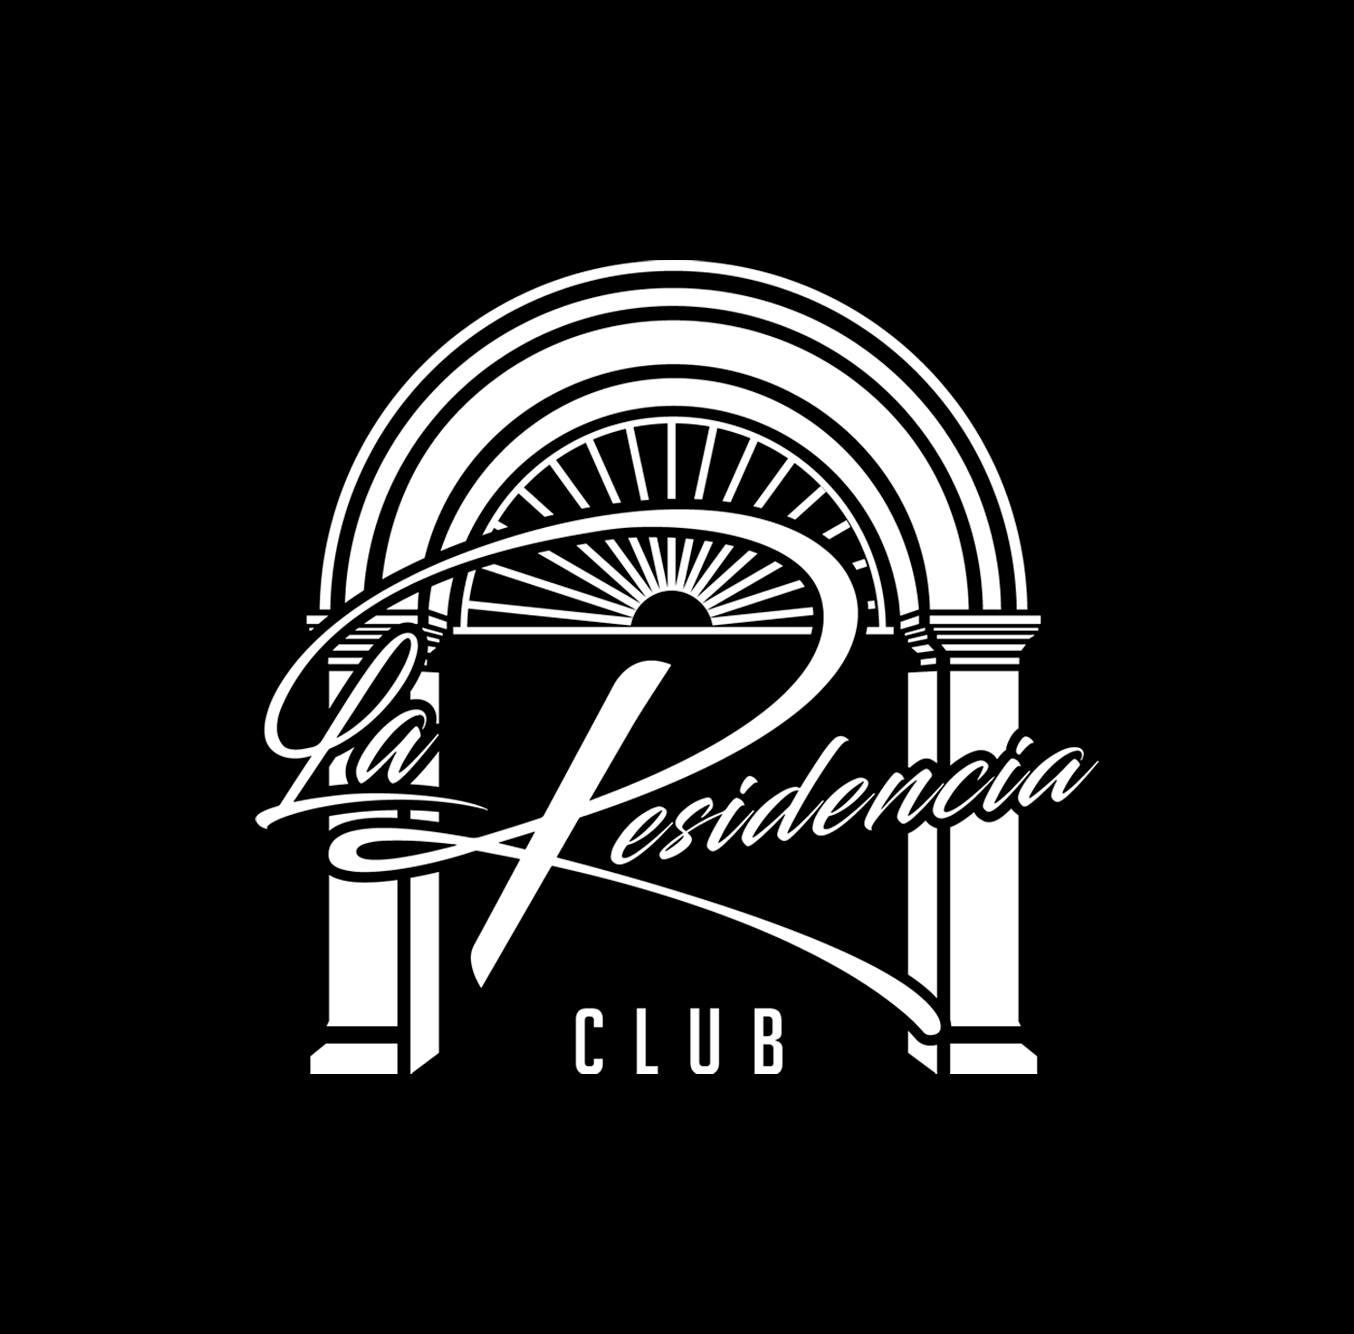 La Residencia Club